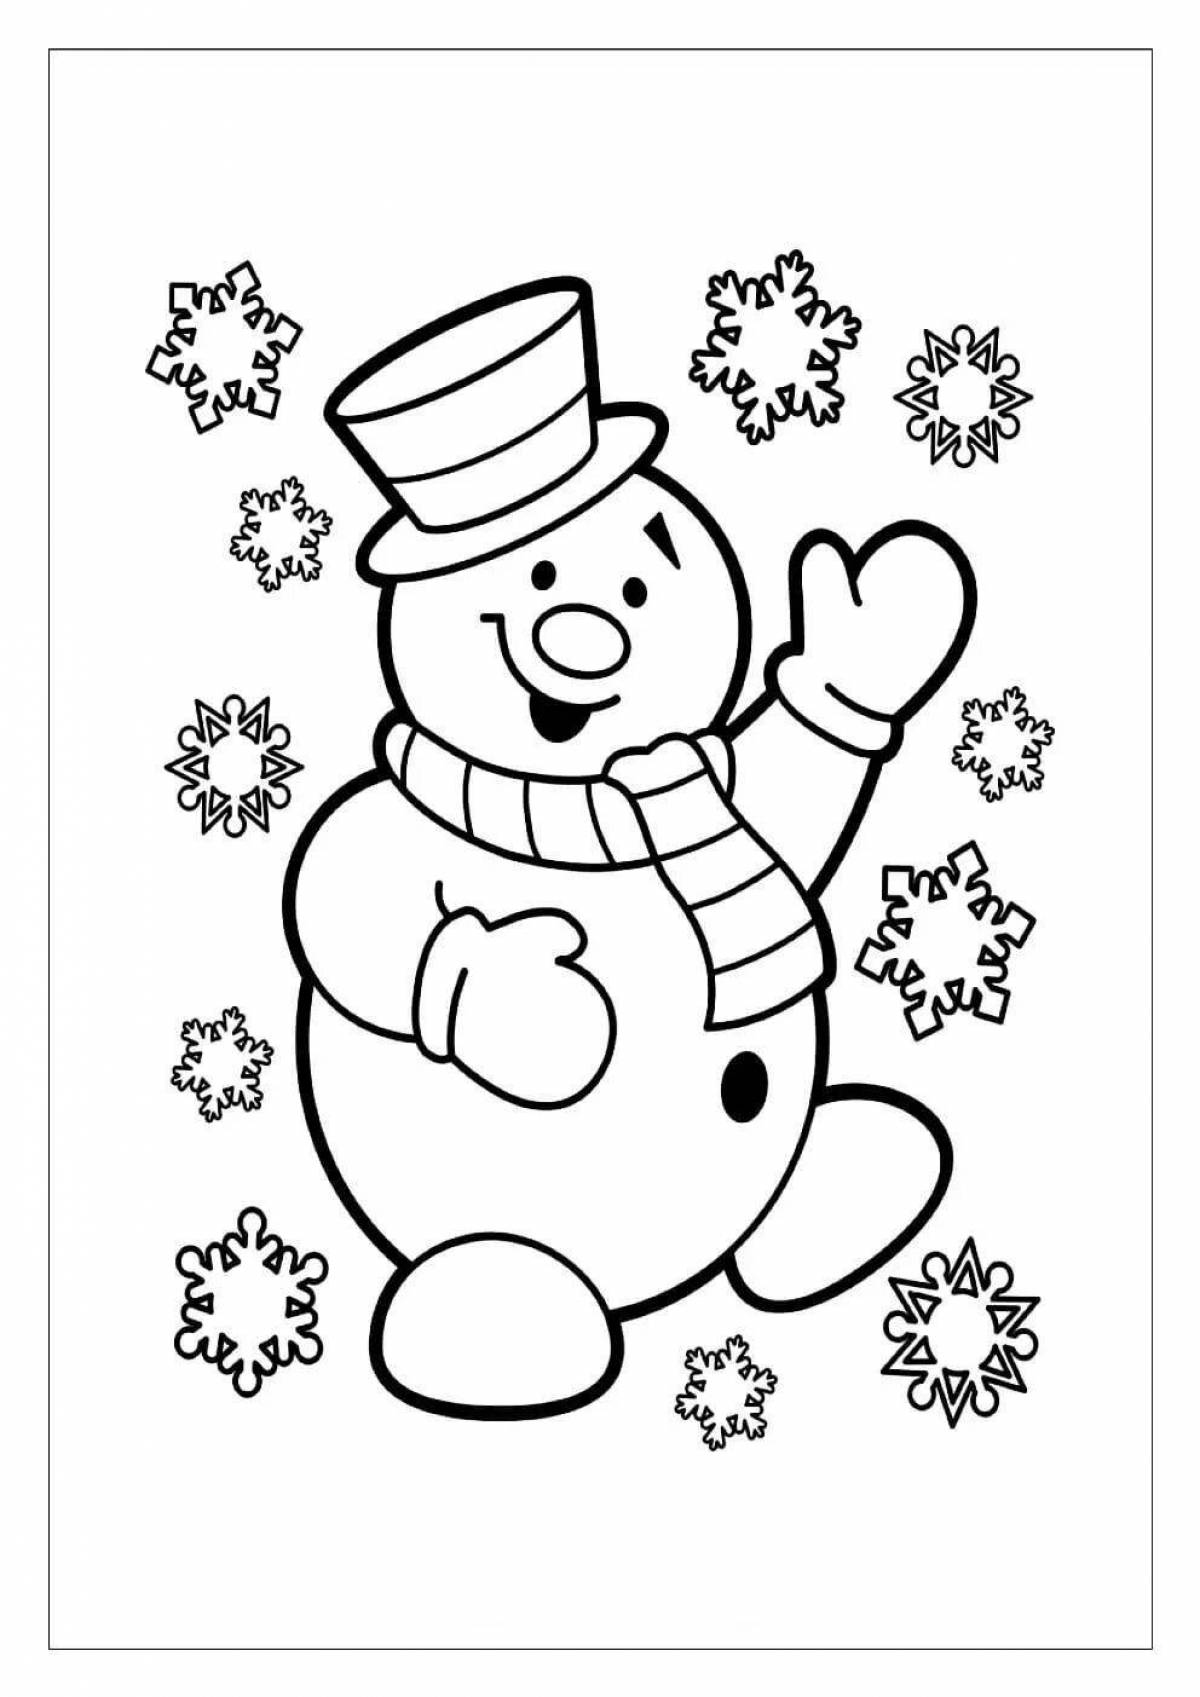 Humorous big snowman coloring book